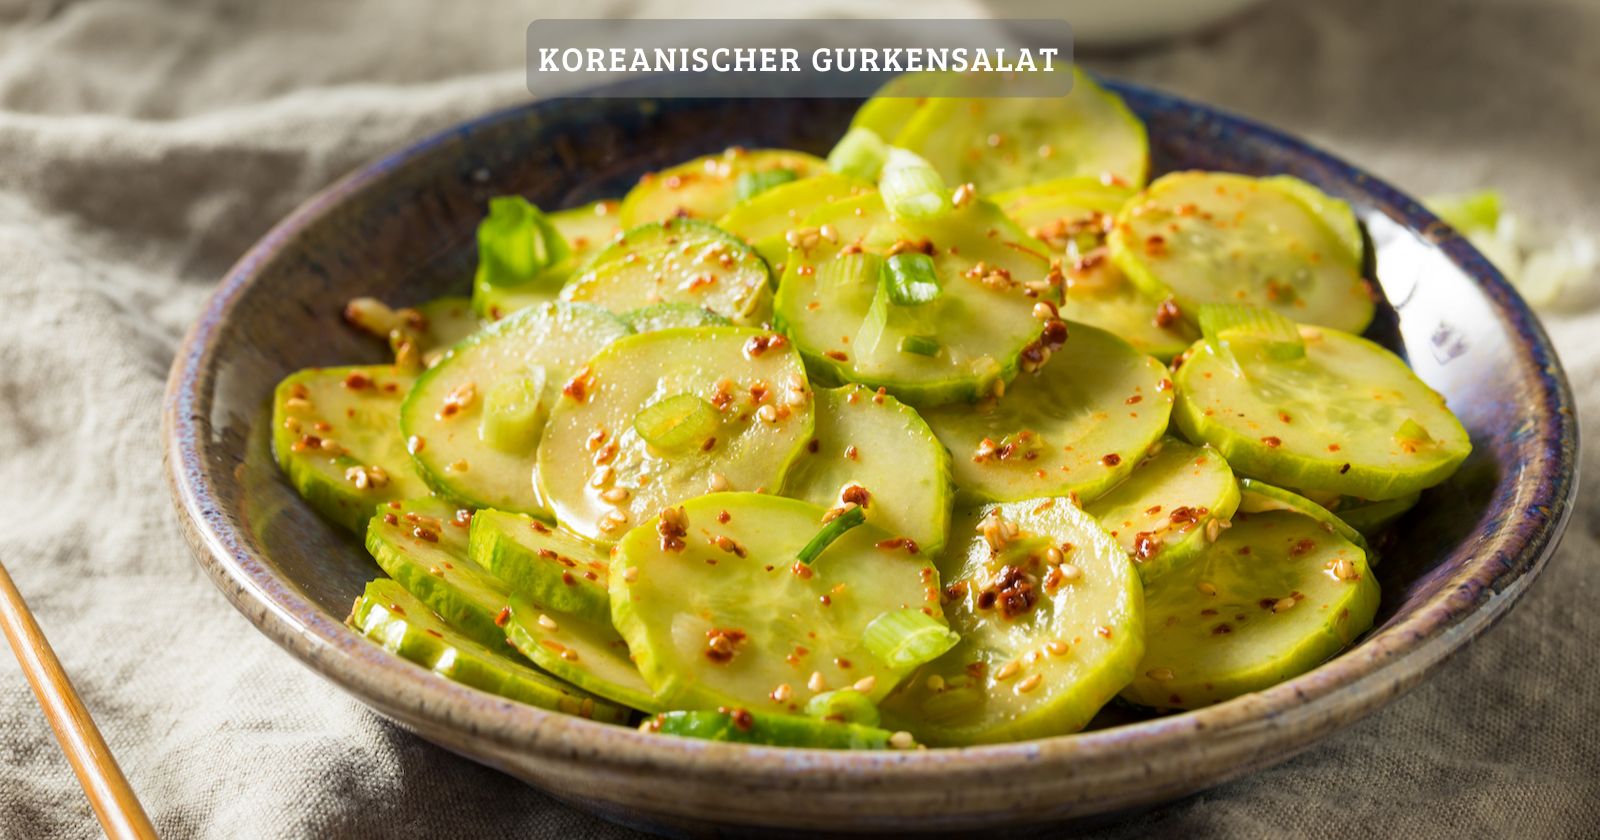 Leckerer koreanischer gurkensalat